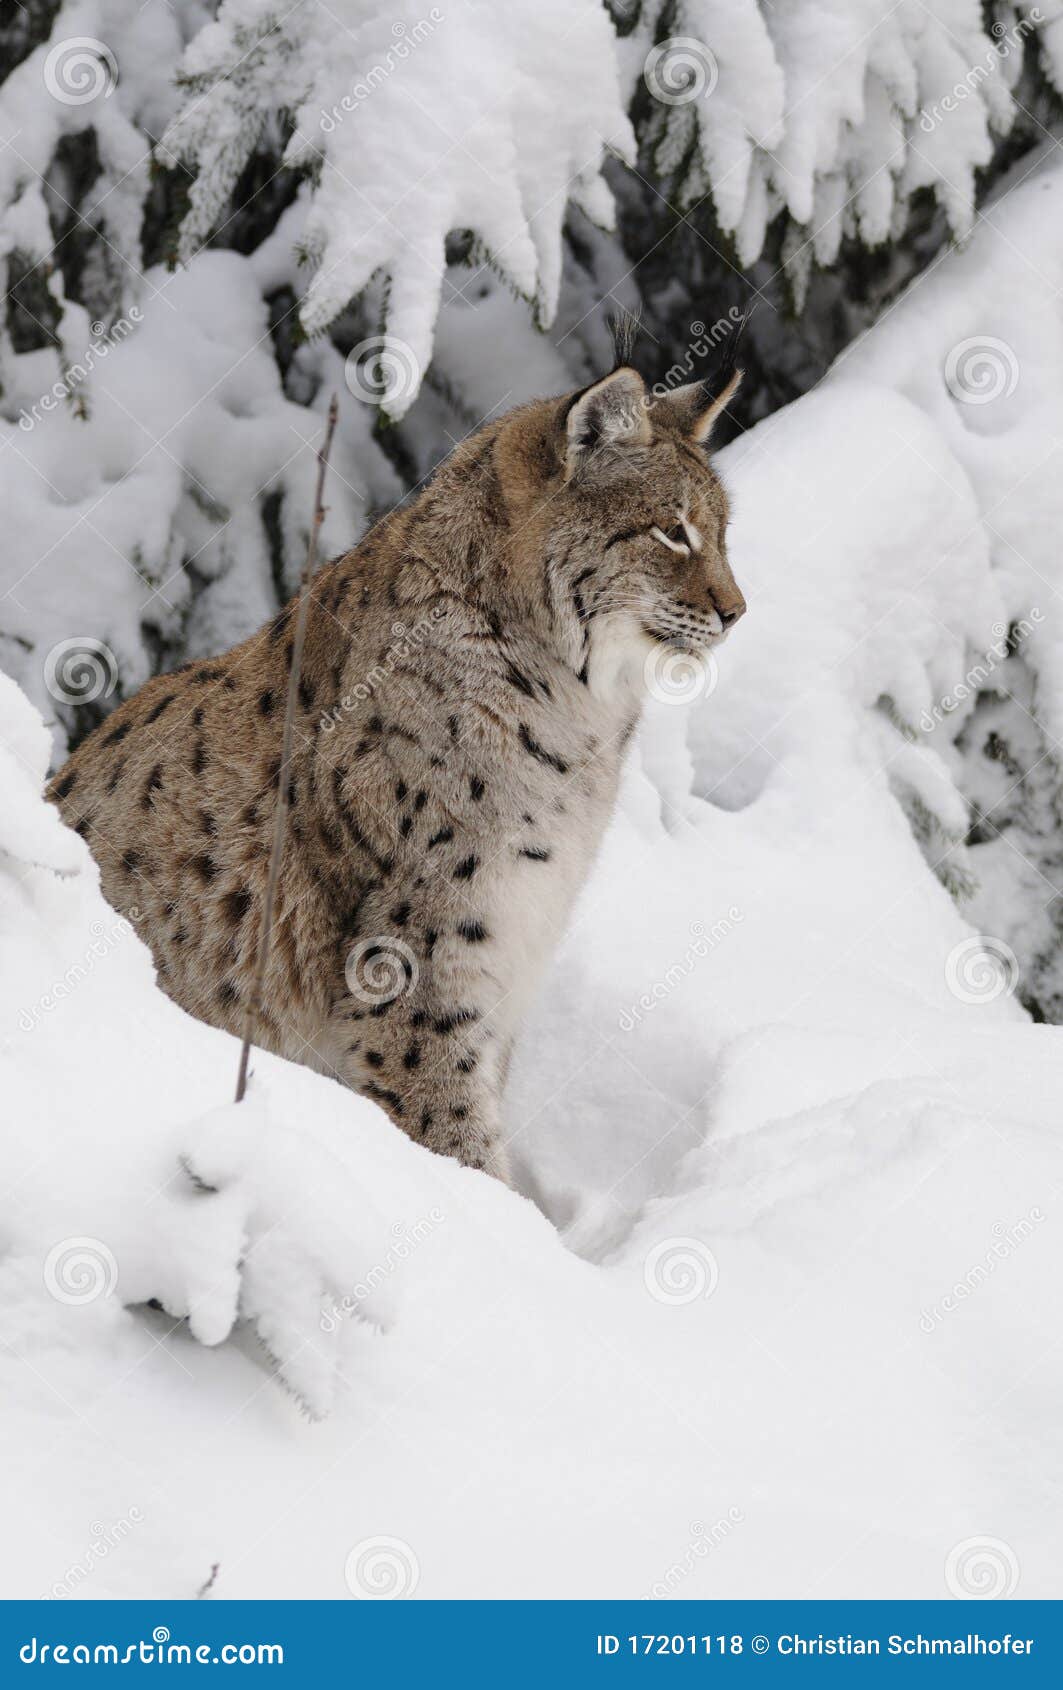 eurasian lynx ( lynx lynx )